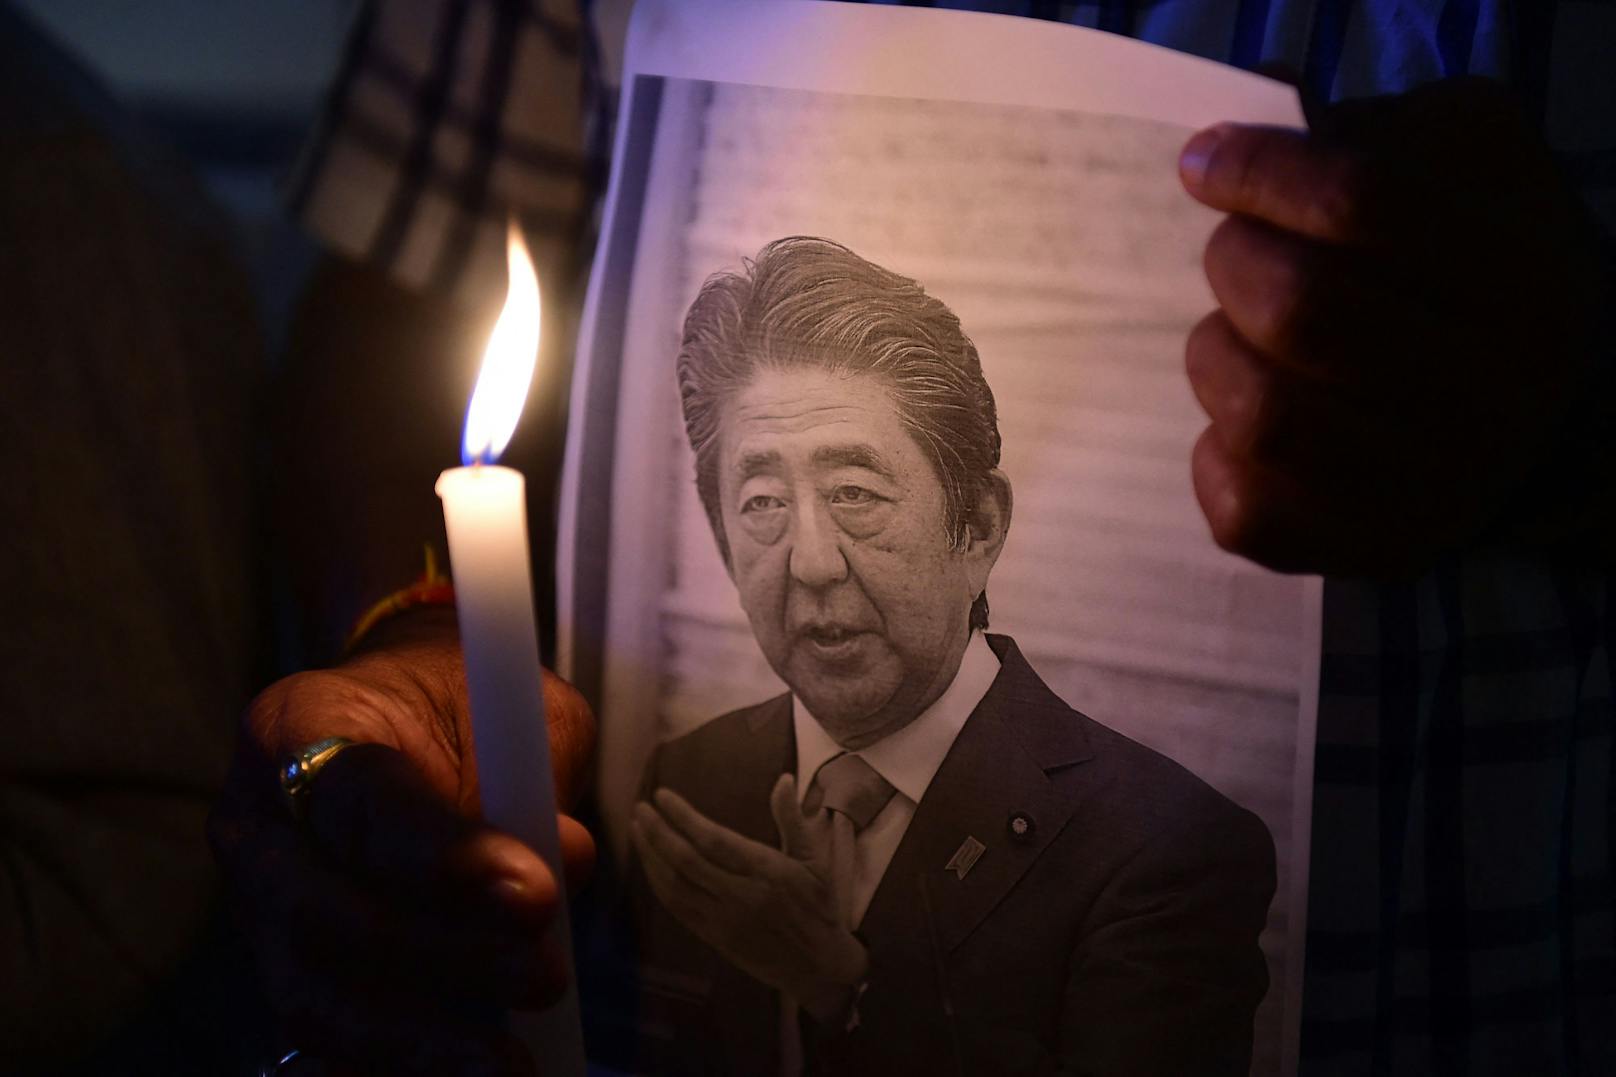 Nach Attentat – Shinzo Abes Partei gewinnt Wahlen klar